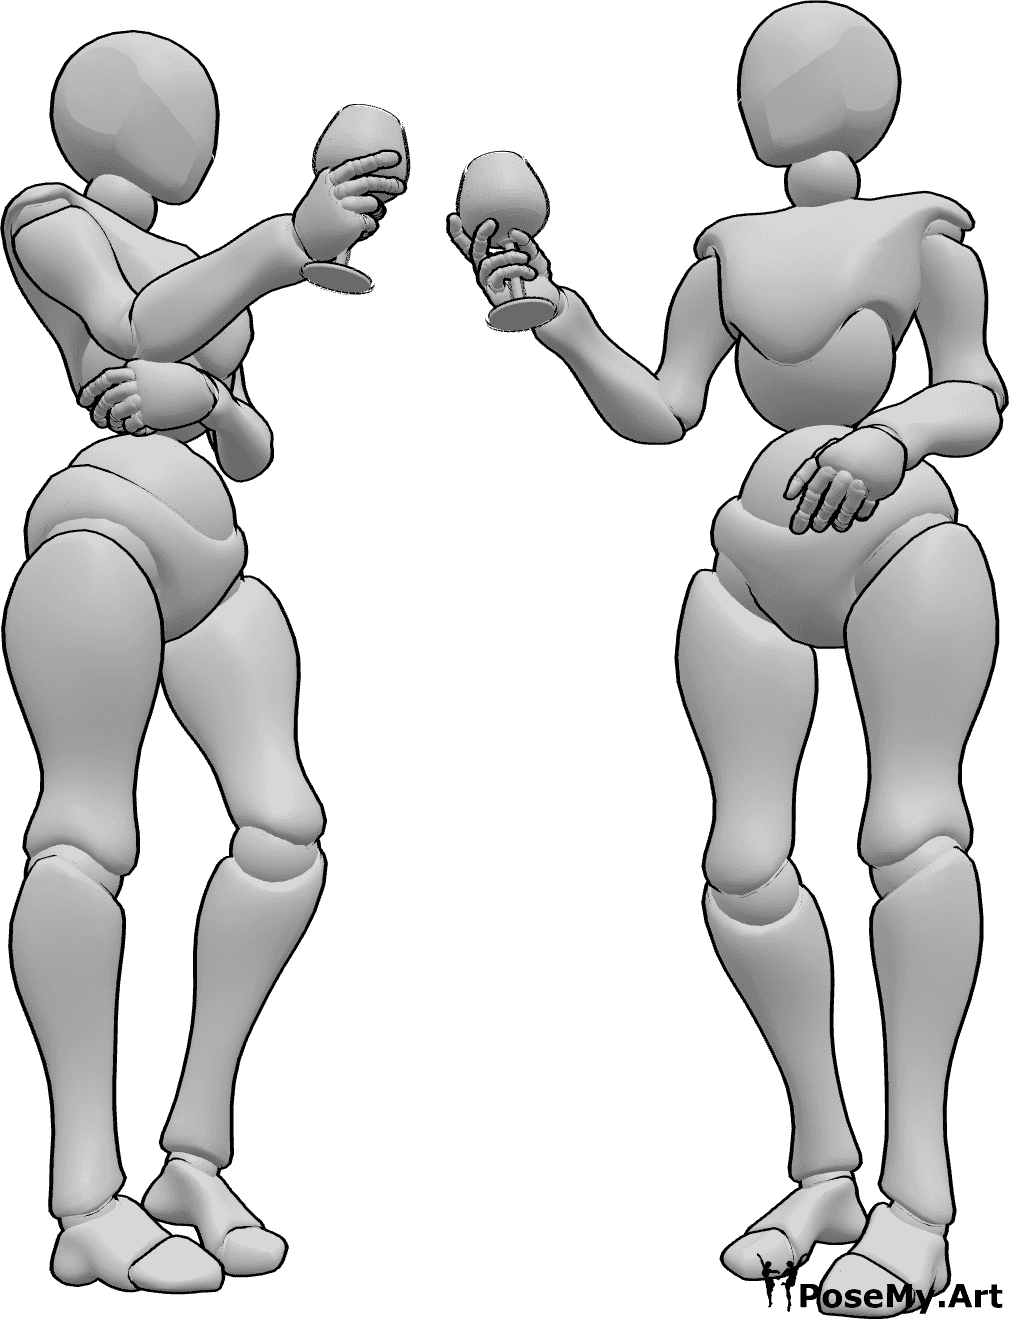 Riferimento alle pose- Femmine in posa per brindare - Due donne sono in piedi e brindano prima di bere, bevendo riferimento